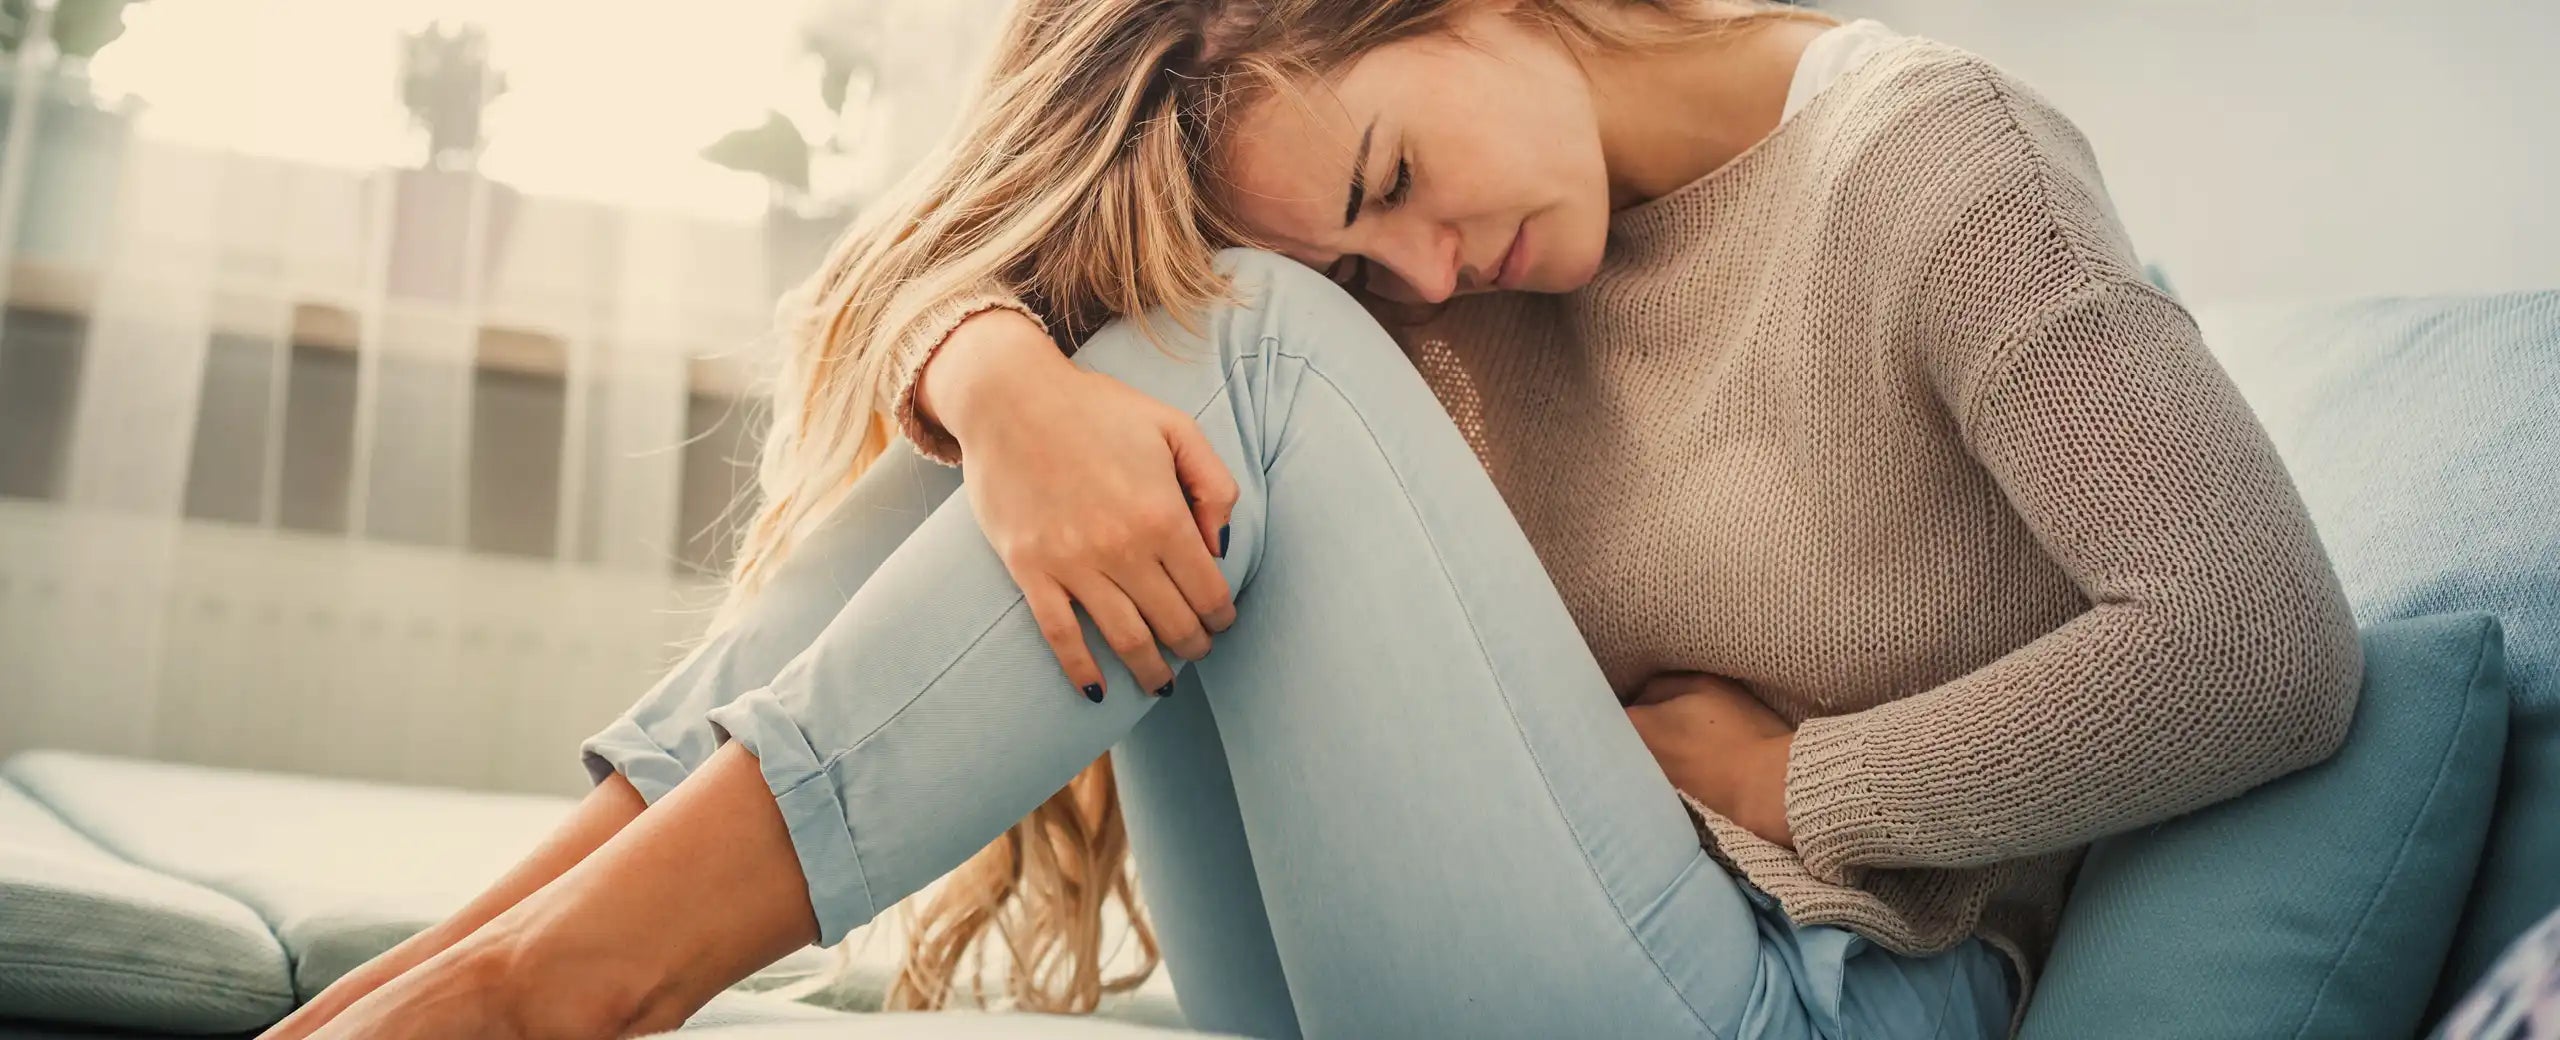 PMS-Schmerzen mit Wärme behandeln hilft vielen Frauen